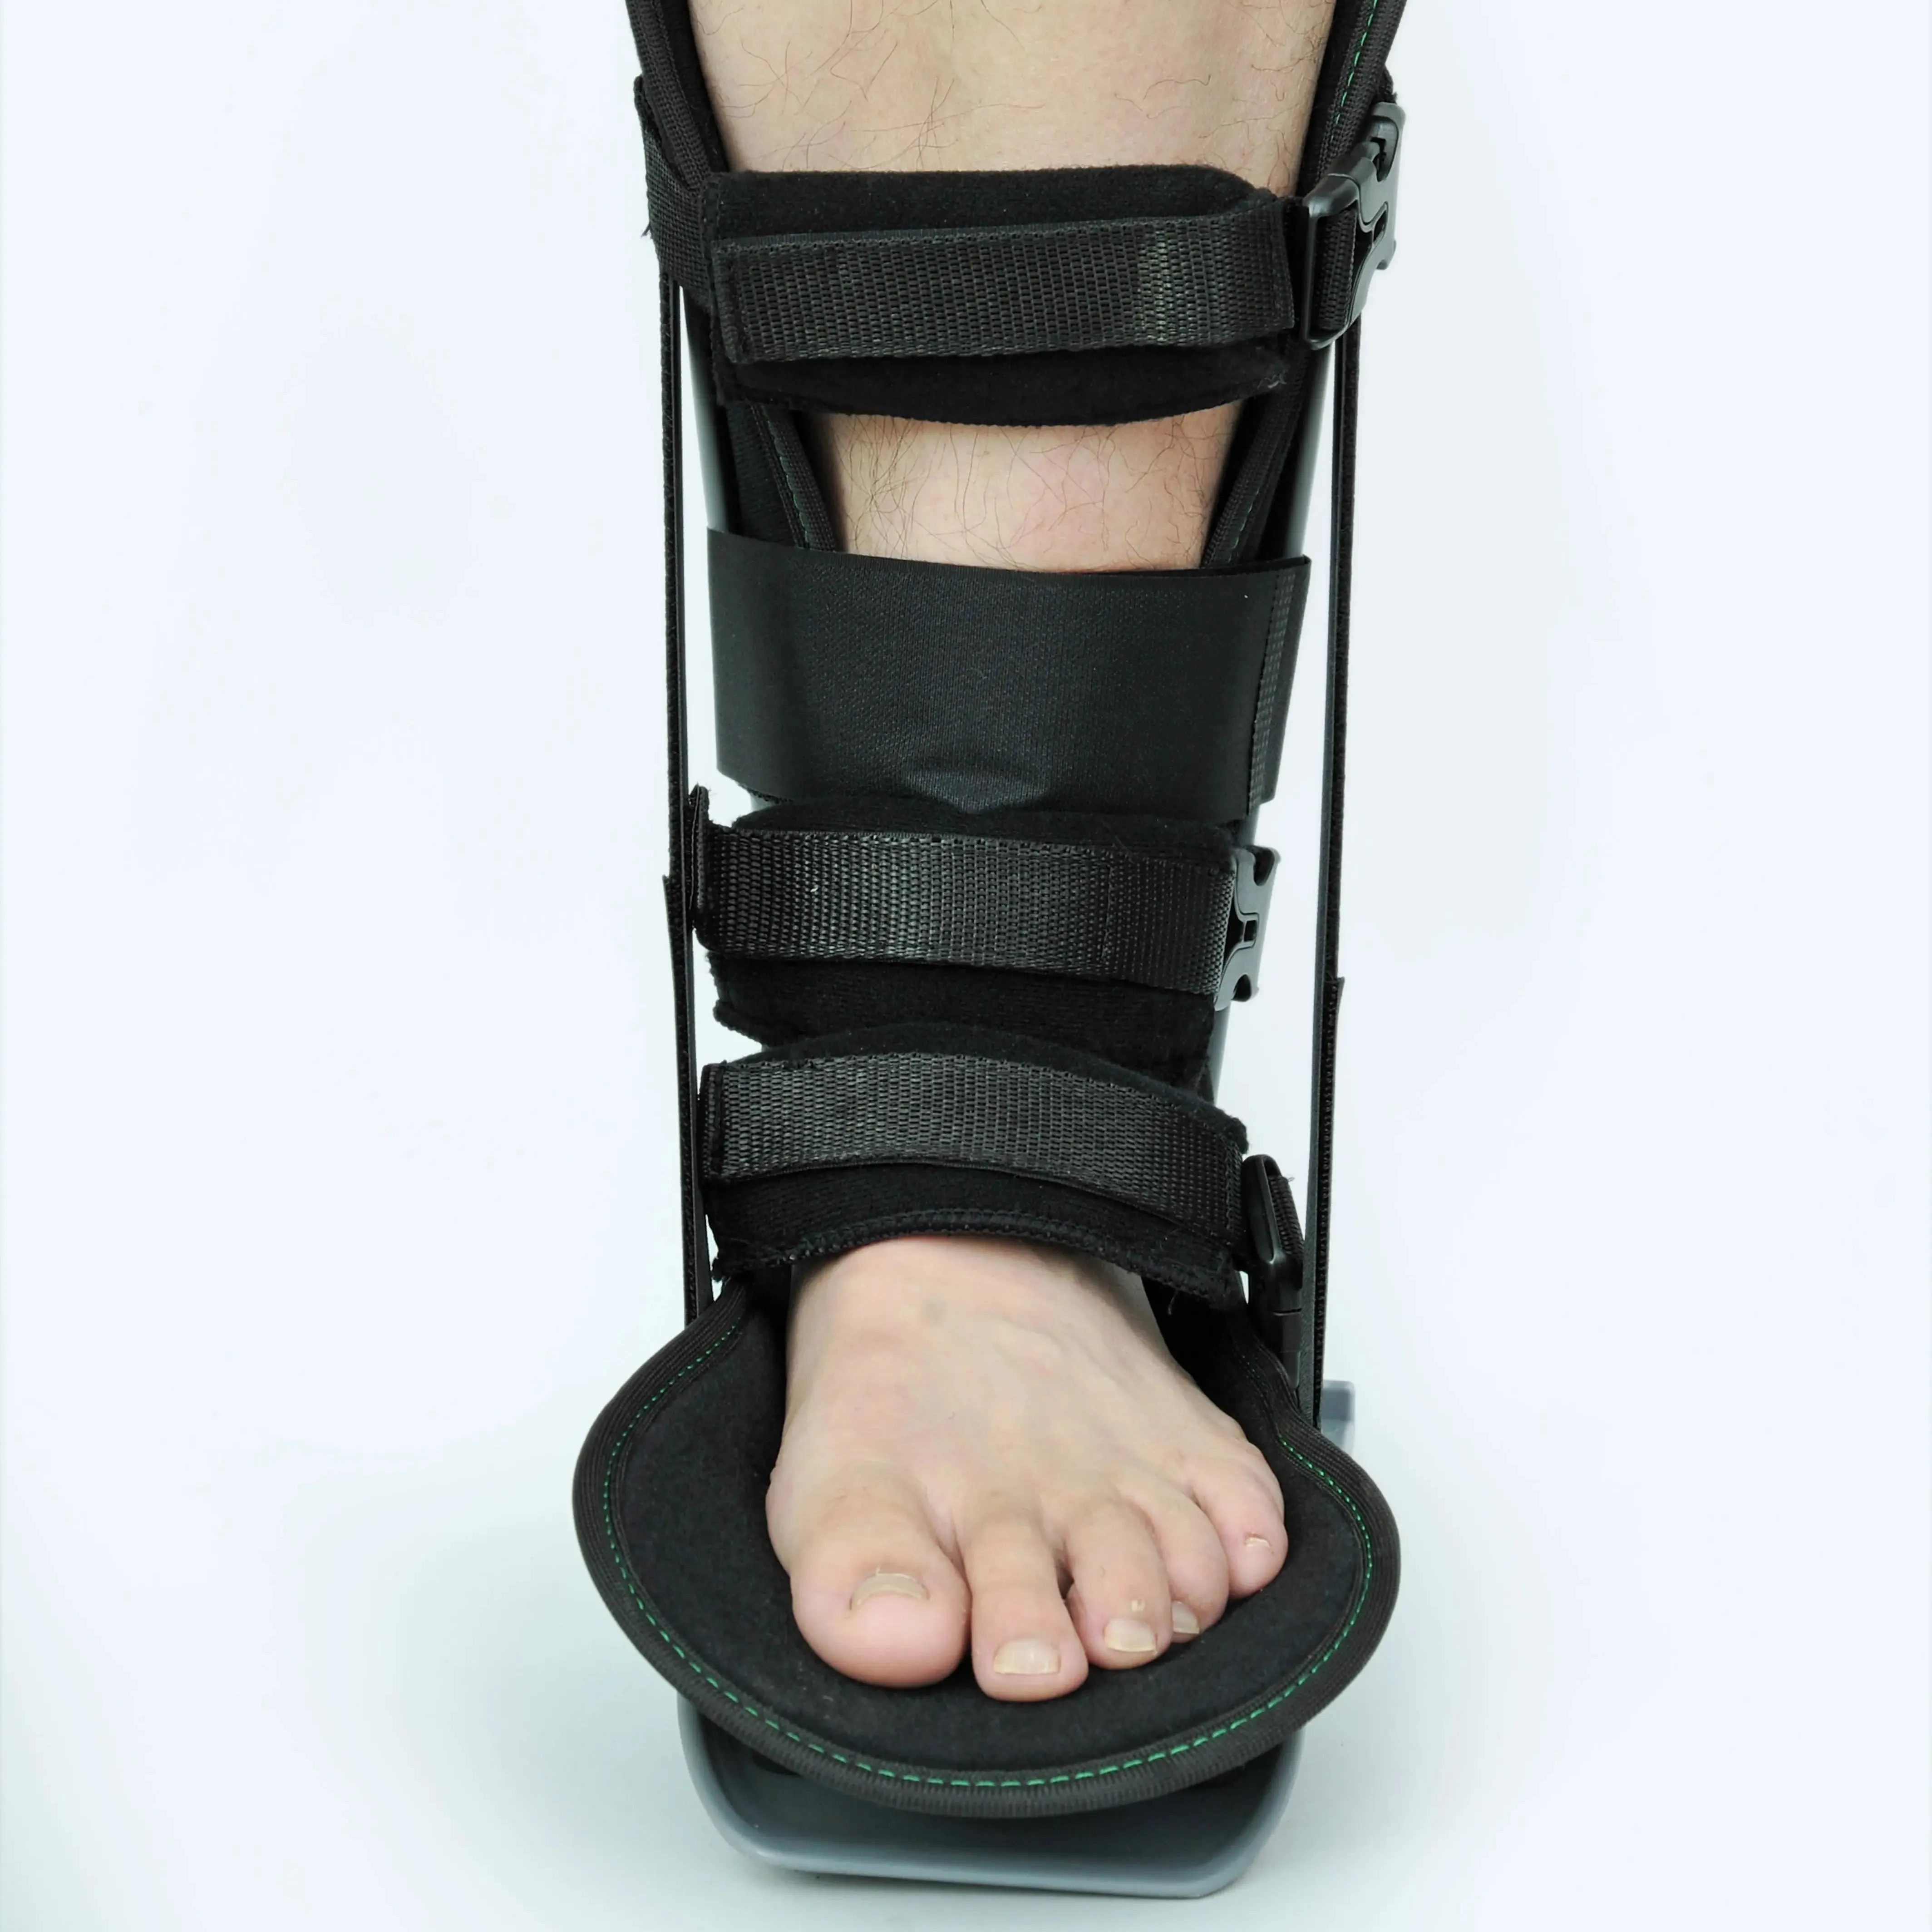 Plastik ayarlanabilir kurtarma ağrı kesici ayak bileği brace yürüyüş boot ayak bileği tıbbi destek